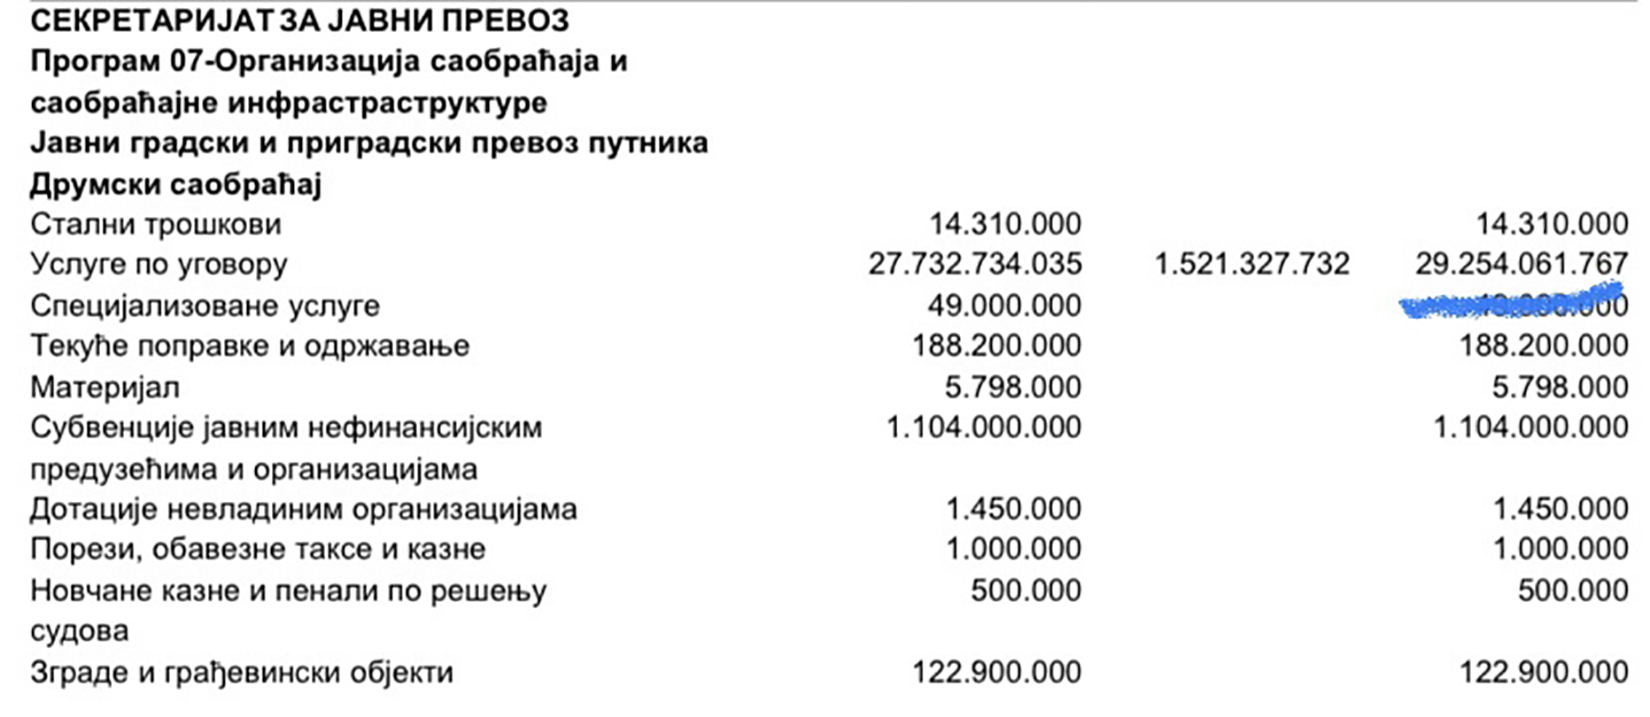 Predlog budžeta grada za 2022. godinu, budžet grada Beograda, predlog, 2022. godina